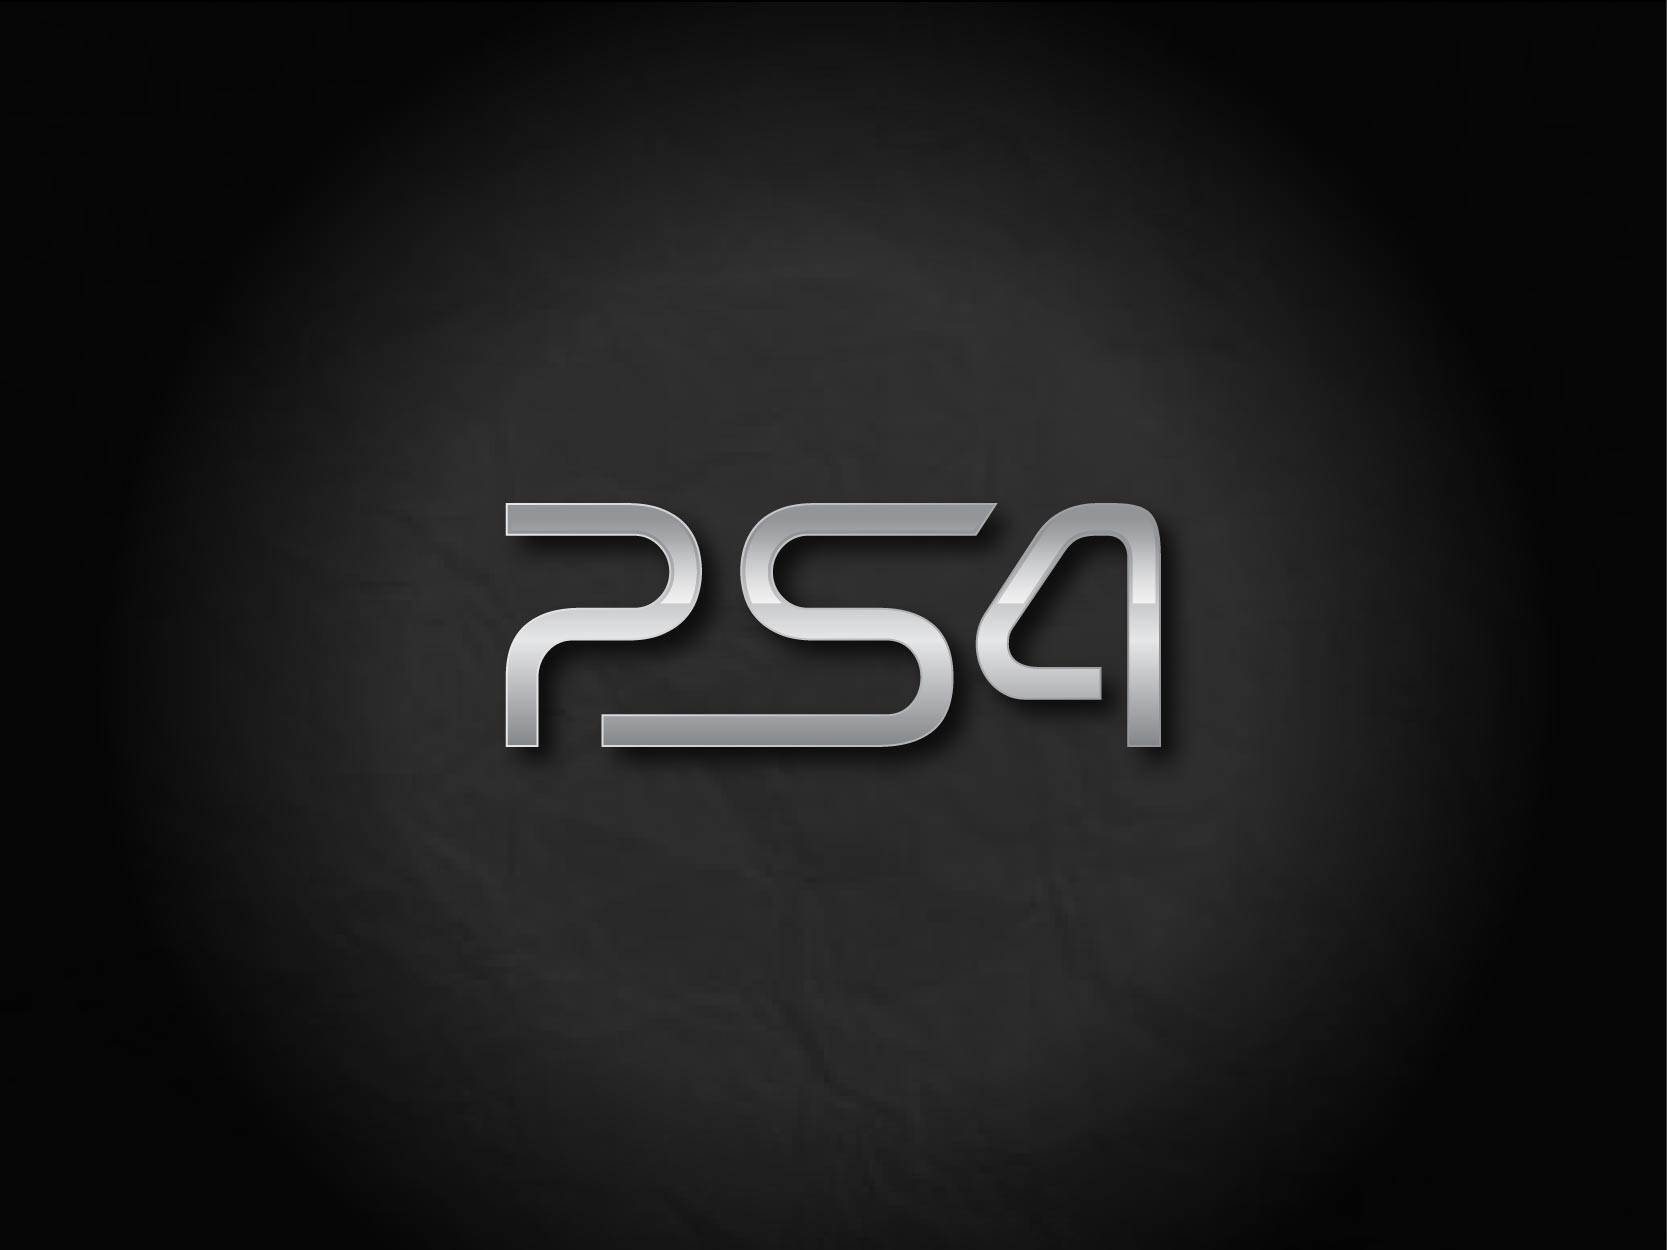 Playstation 4 Logo Black 1667 1250 High Definition Wallpaper GamesHD 1667x1250